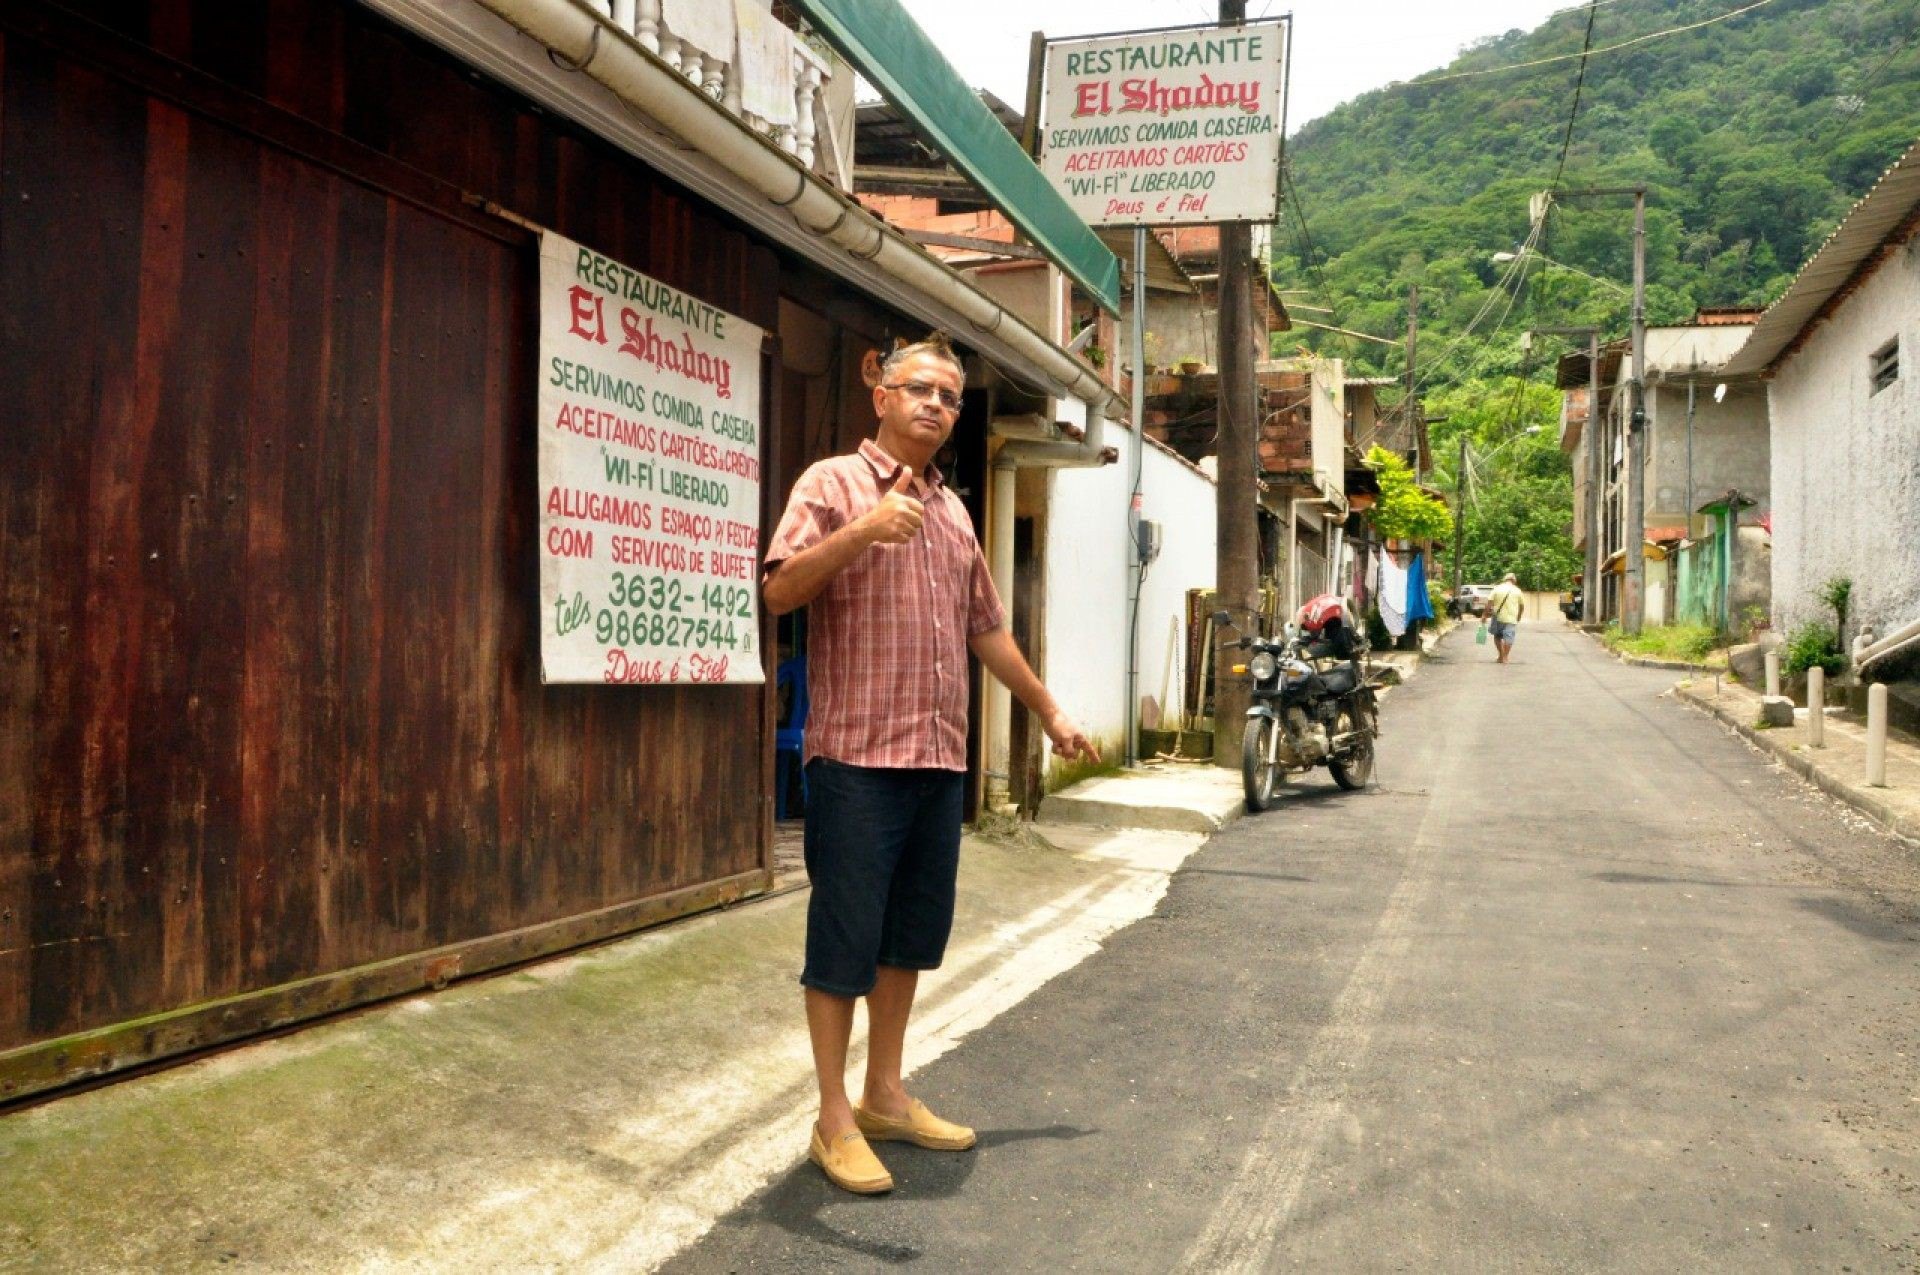 Dono de um restaurante no local, Ronaldo dos Santos mora na Rua Alfredo Pinto Carneiro há 22 anos e afirma que a pavimentação vai facilitar a vida dos moradores e o acesso dos clientes ao seu comércio. - Divulgação/Gilson Jr.